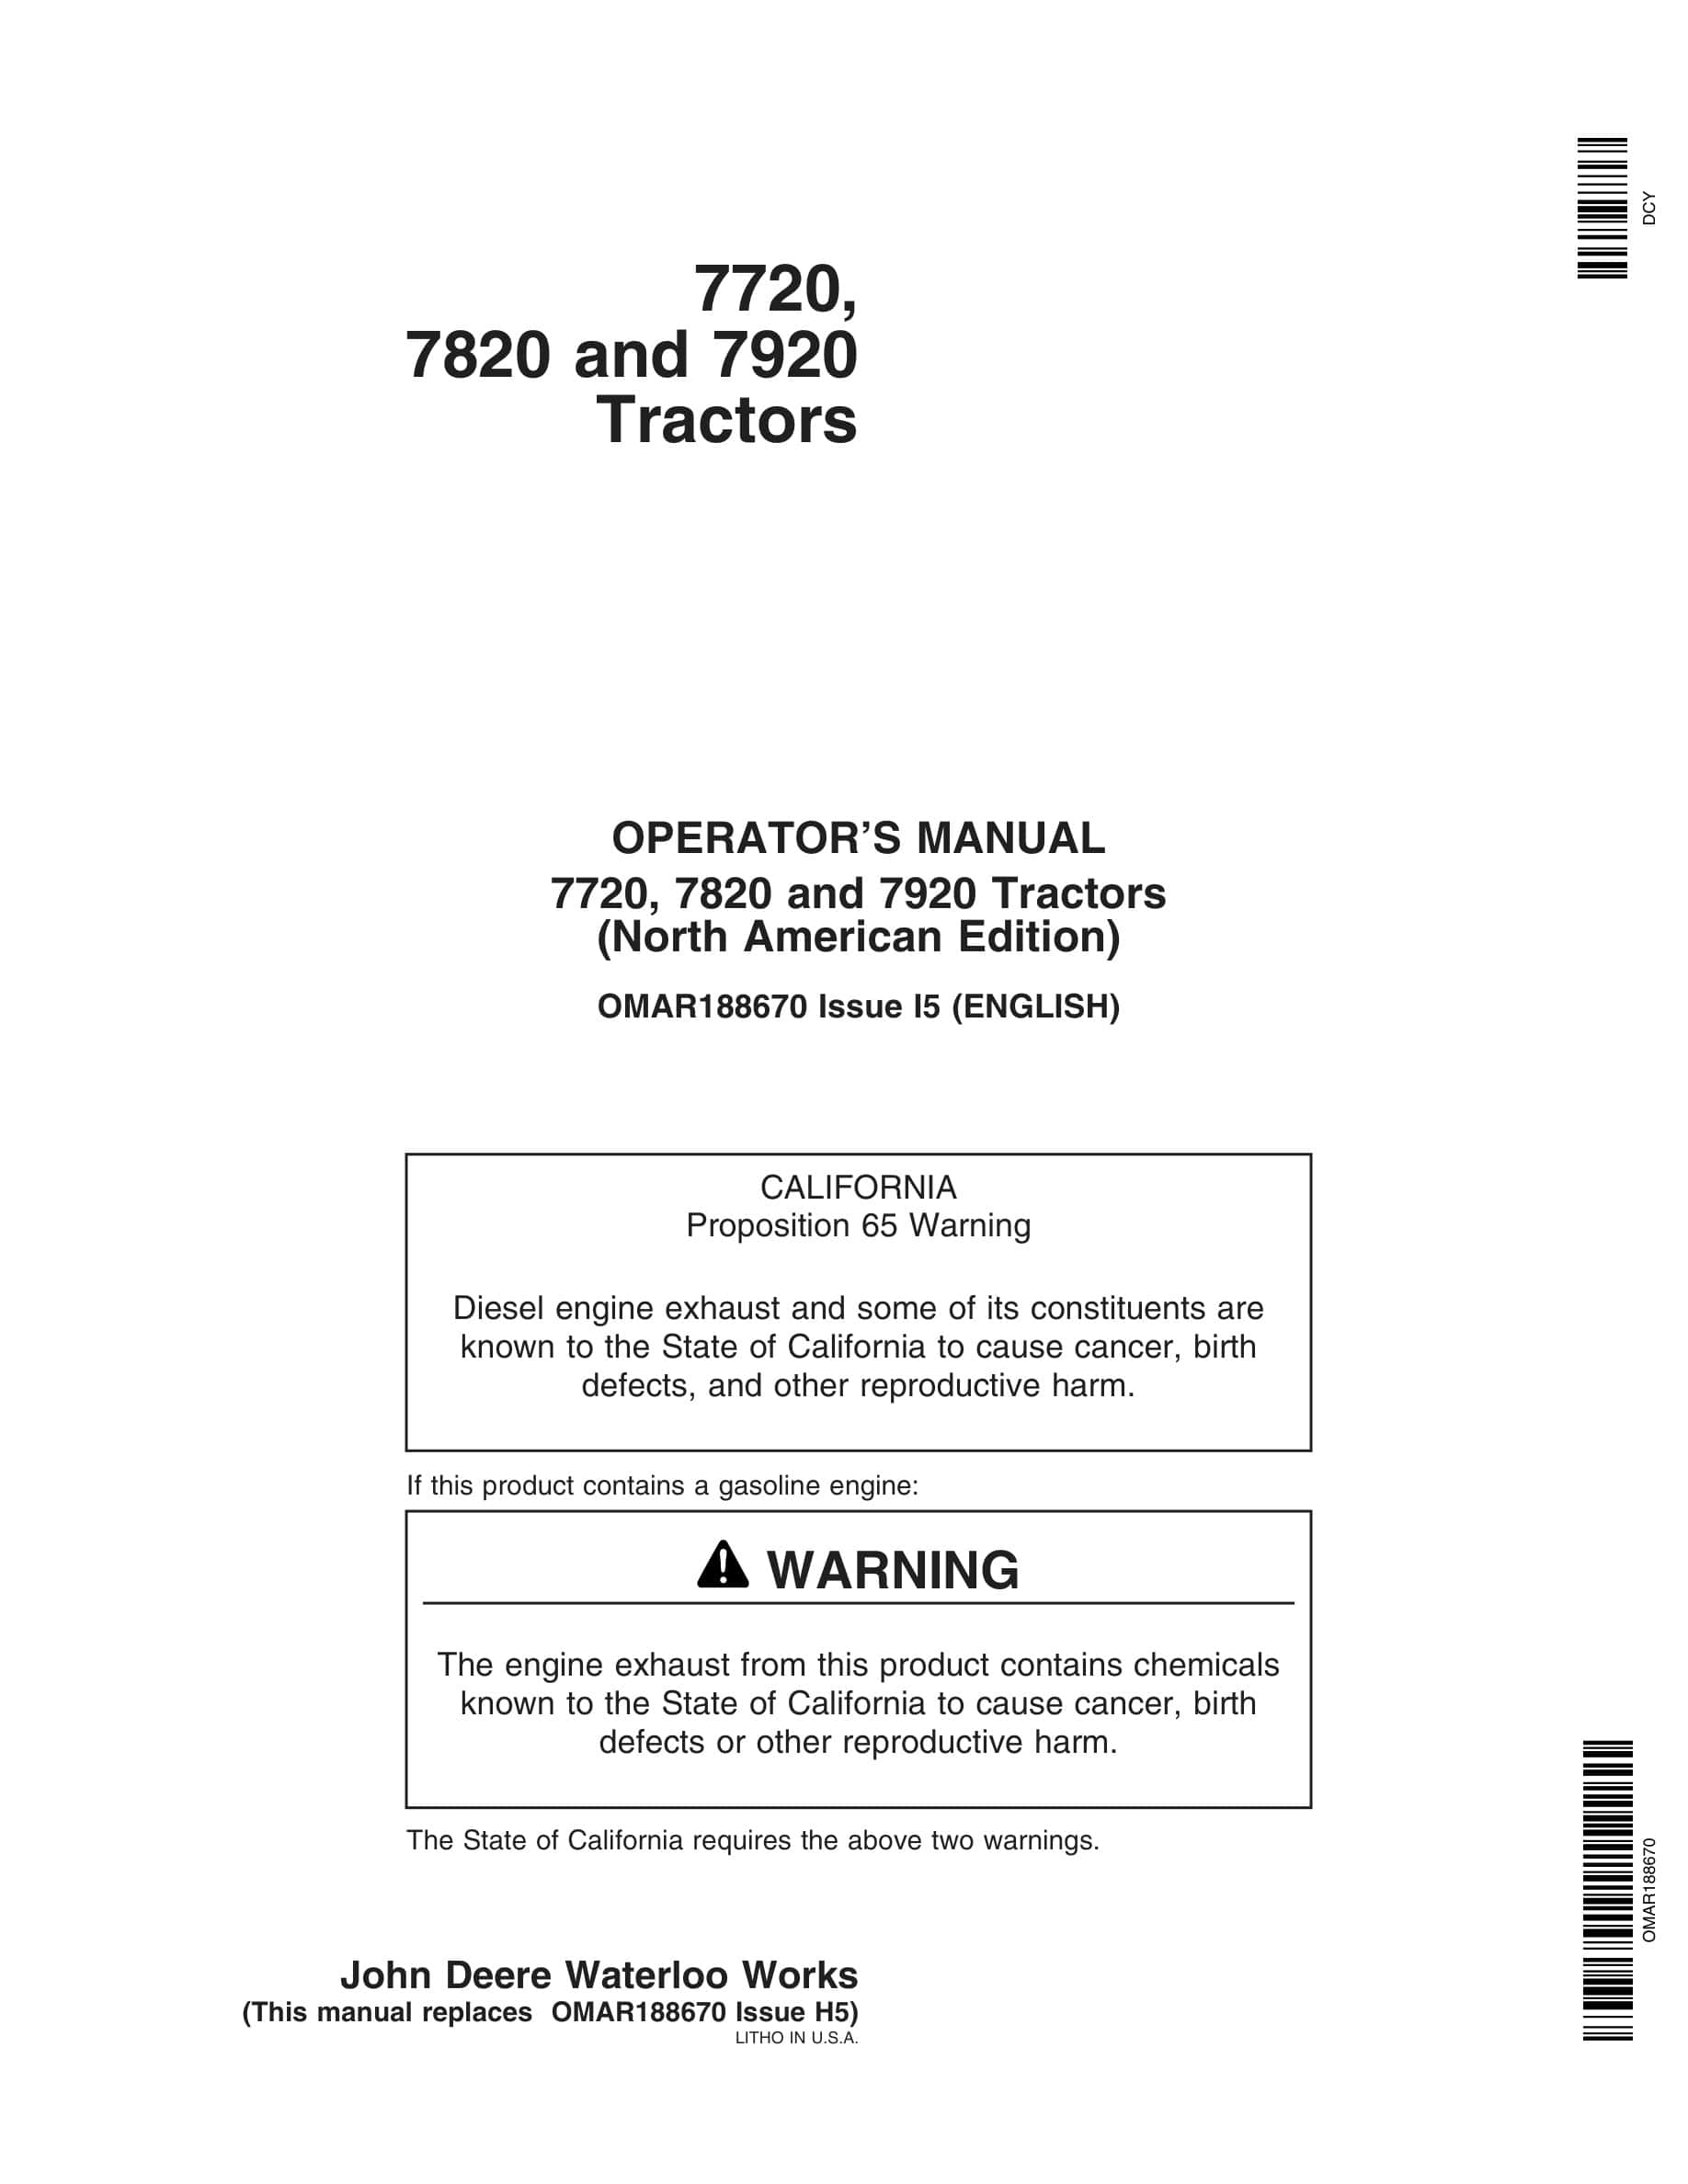 John Deere 7720, 7820 and 7920 Tractor Operator Manual OMAR188670-1